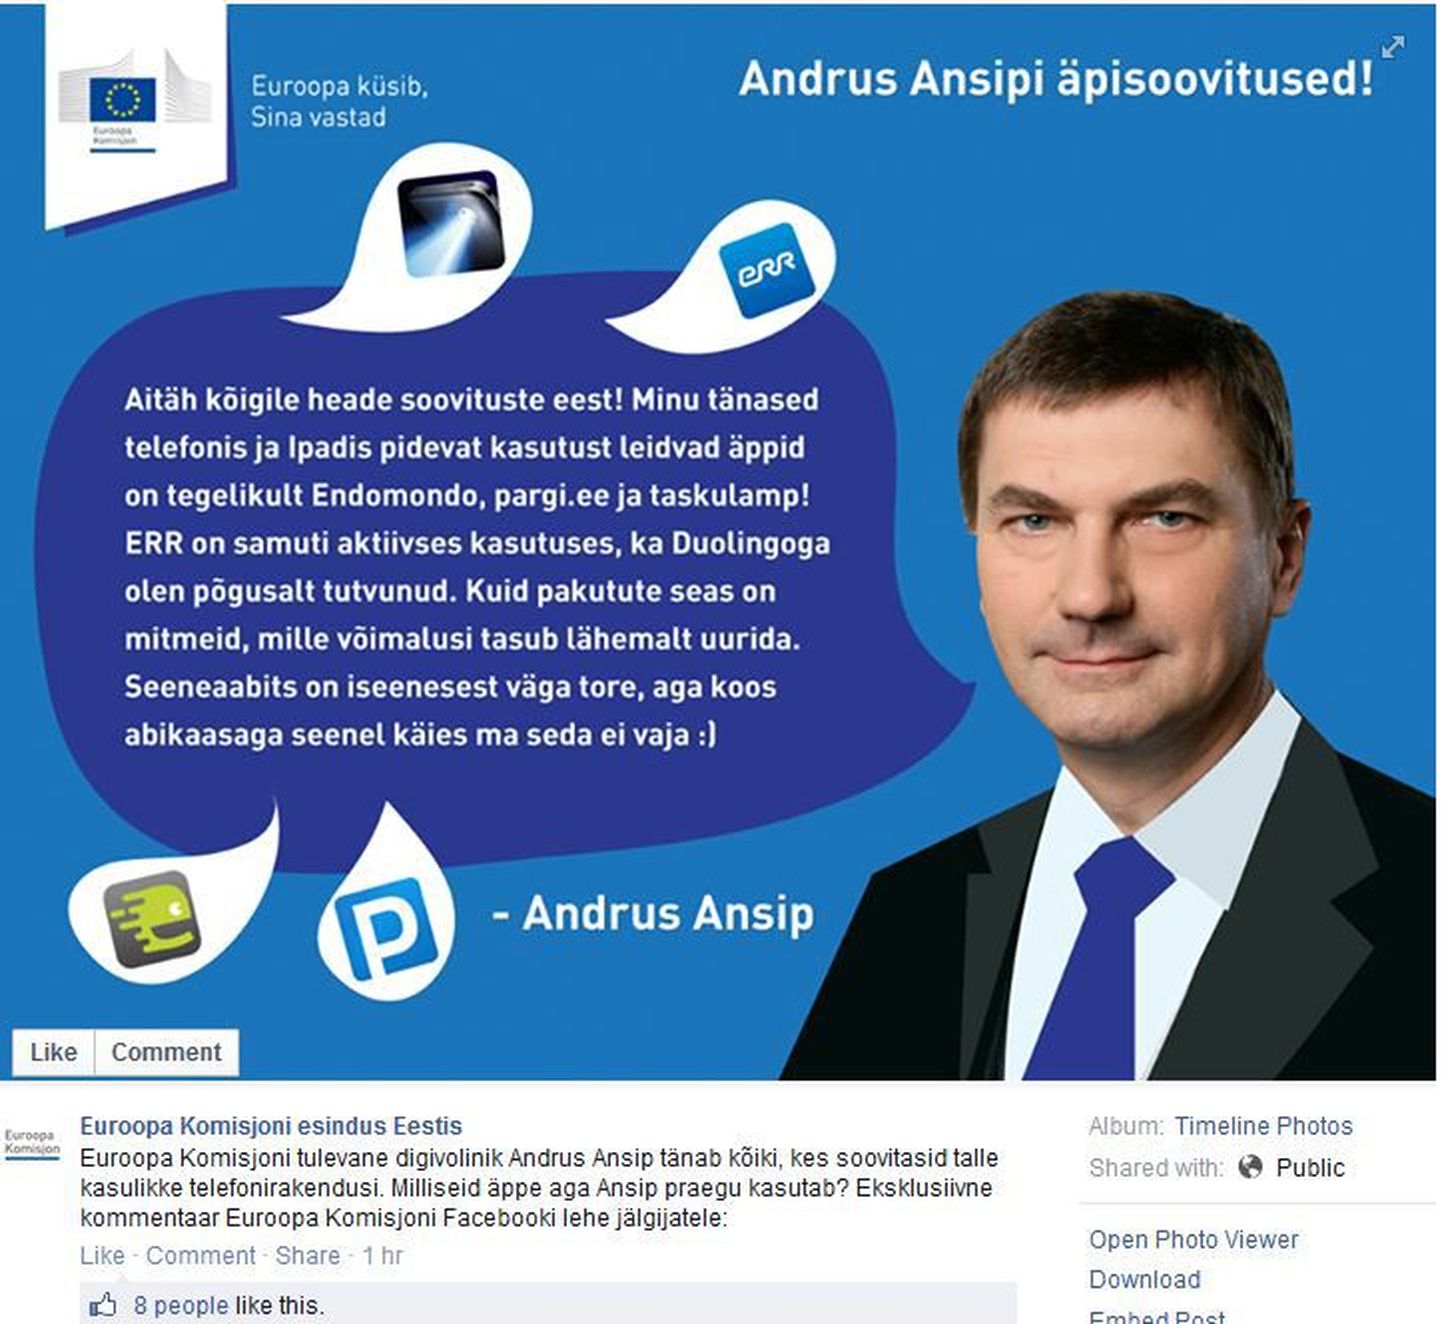 Andrus Ansip Euroopa Komisjoni Eesti esinduse Facebooki lehel.